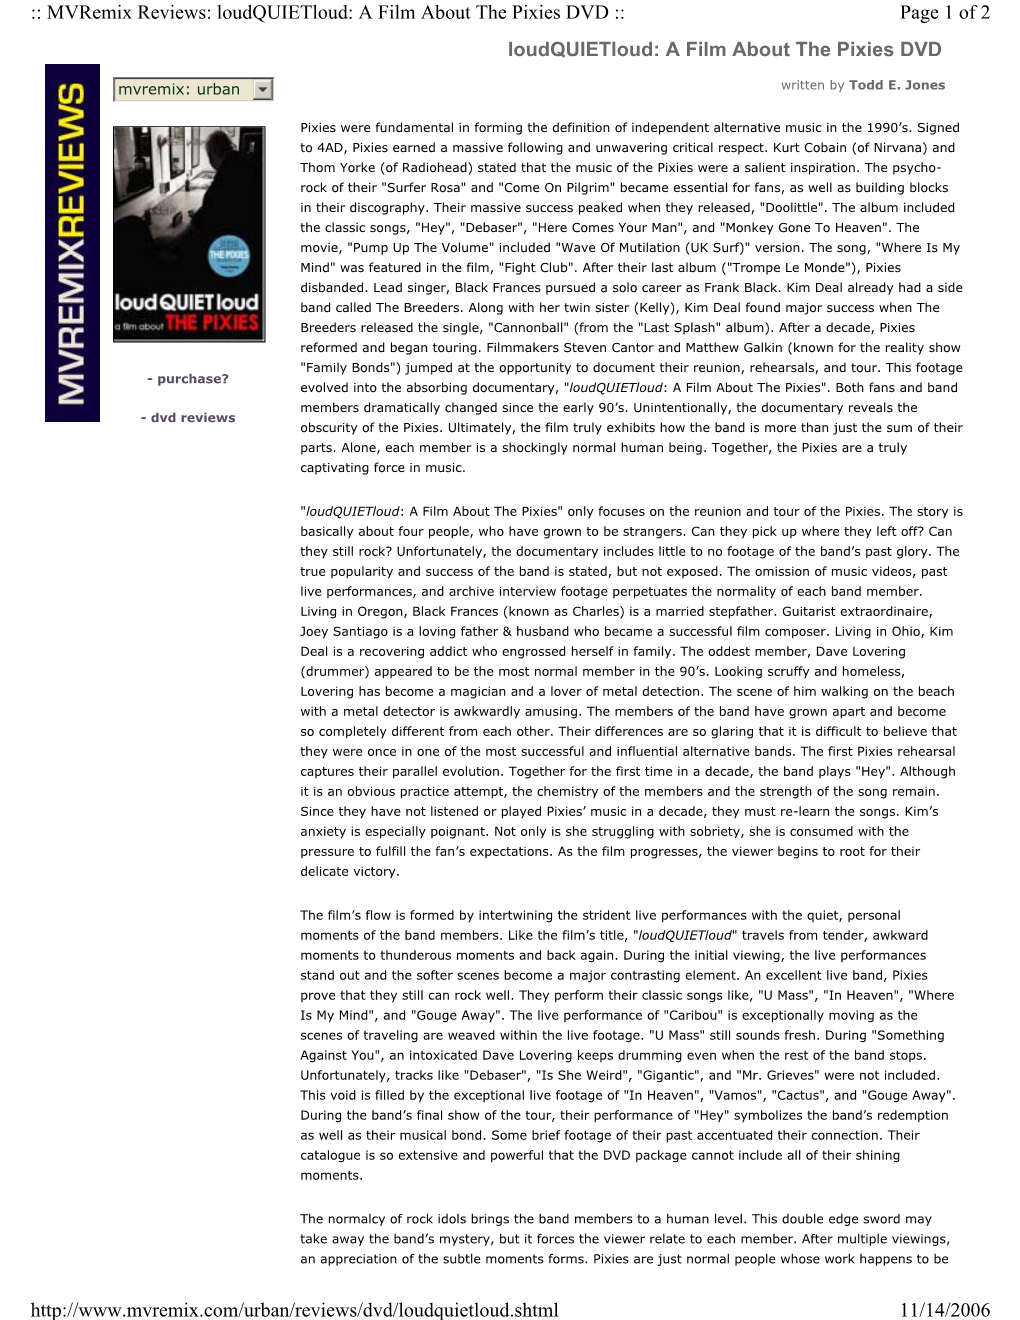 Mvremix Reviews: Loudquietloud: a Film About the Pixies DVD :: Page 1 of 2 Loudquietloud: a Film About the Pixies DVD